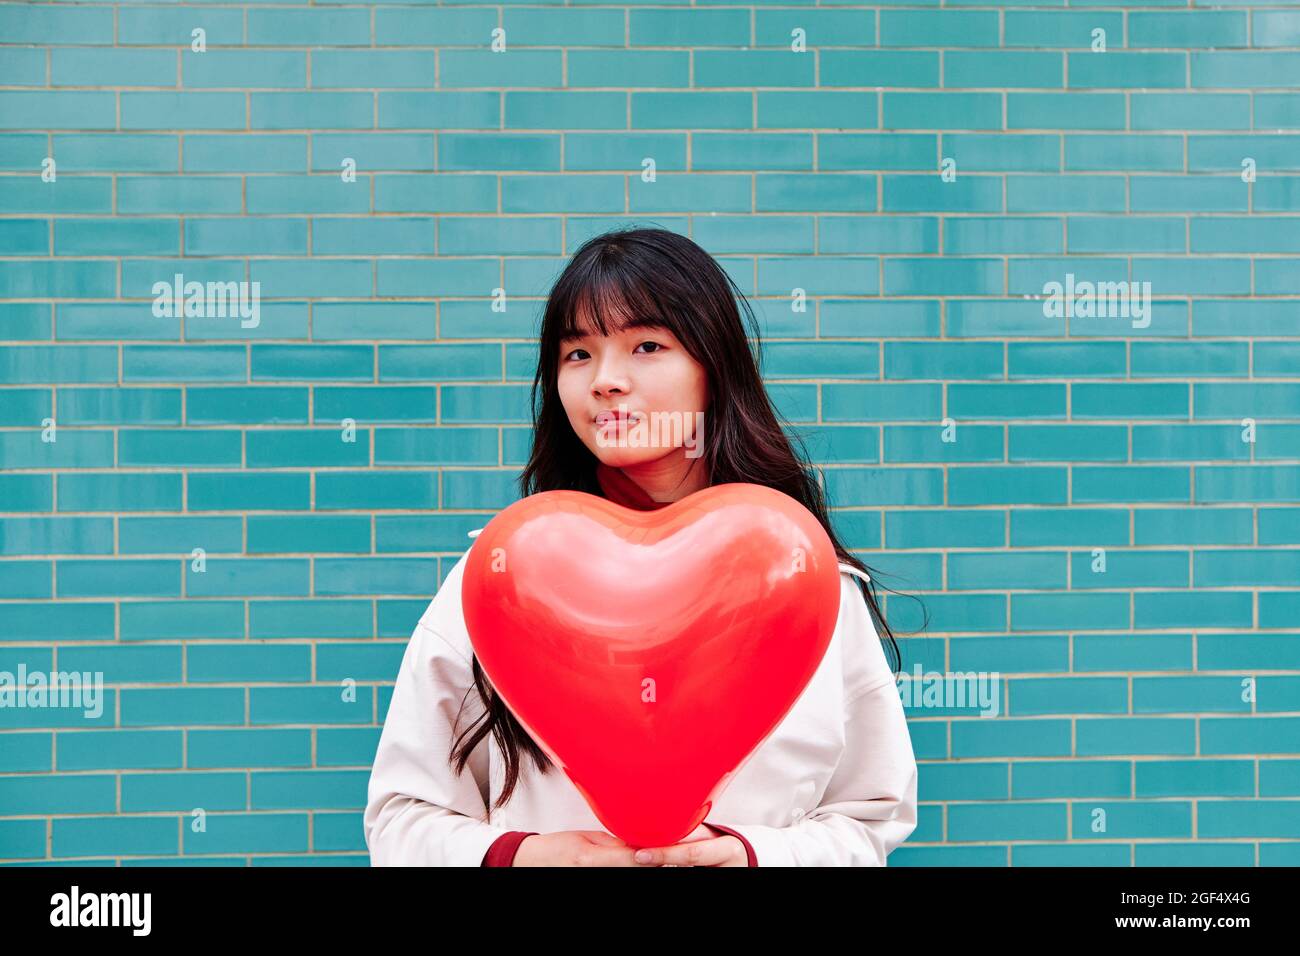 Junge Frau hält einen roten Herzballon in der Nähe einer Ziegelwand Stockfoto